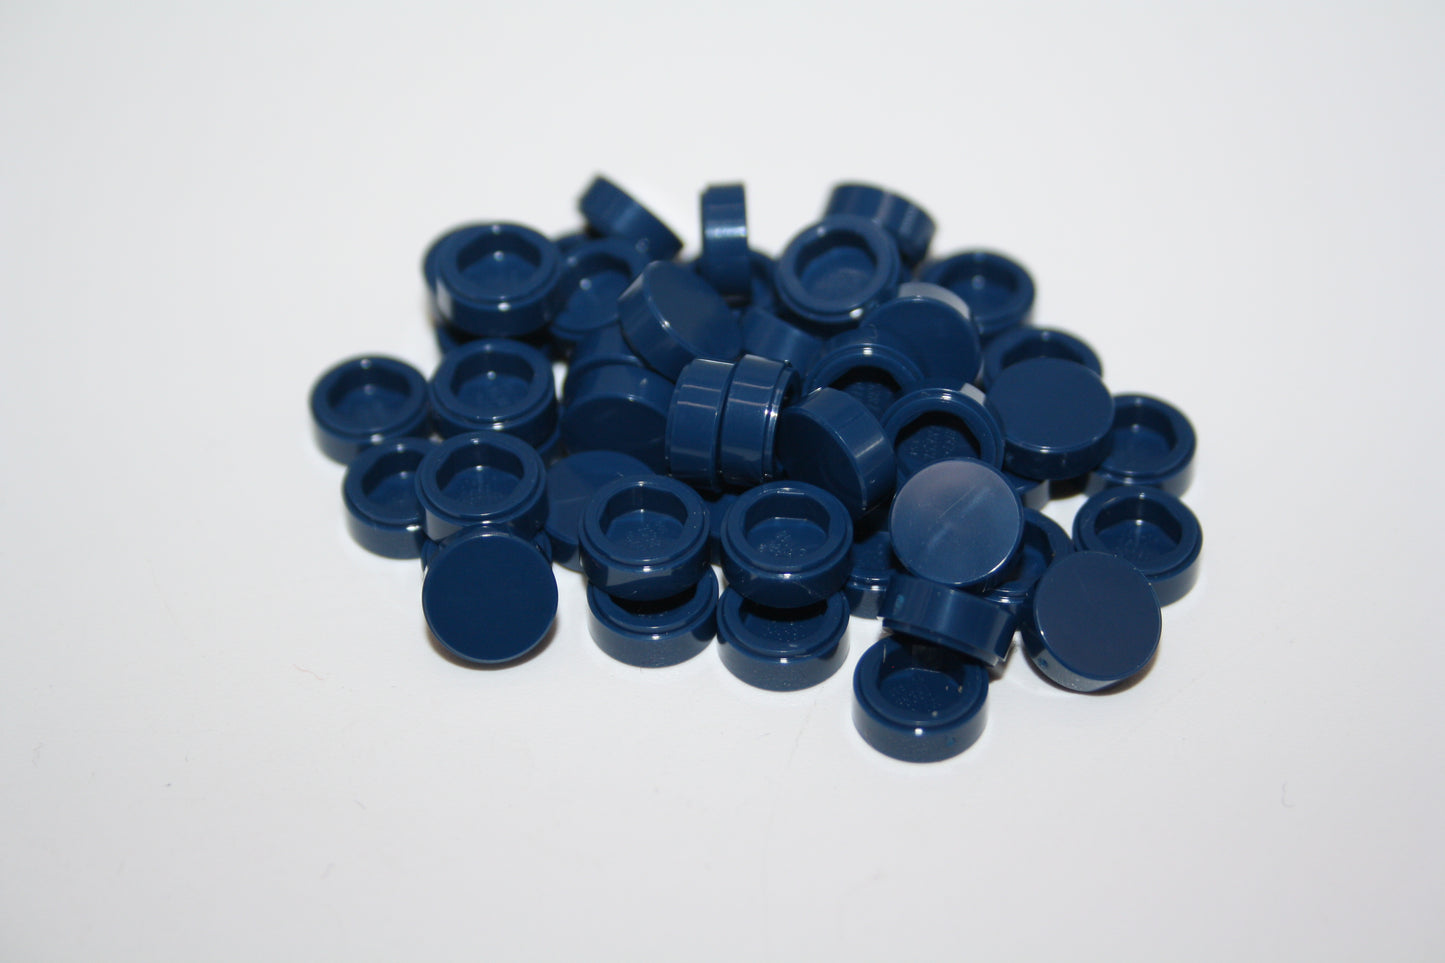 LEGO® - 1x1 Fliese rund/tile round - dunkelblau/dark blue - 98138 - Grünzeug 6x-500x Sparpaket